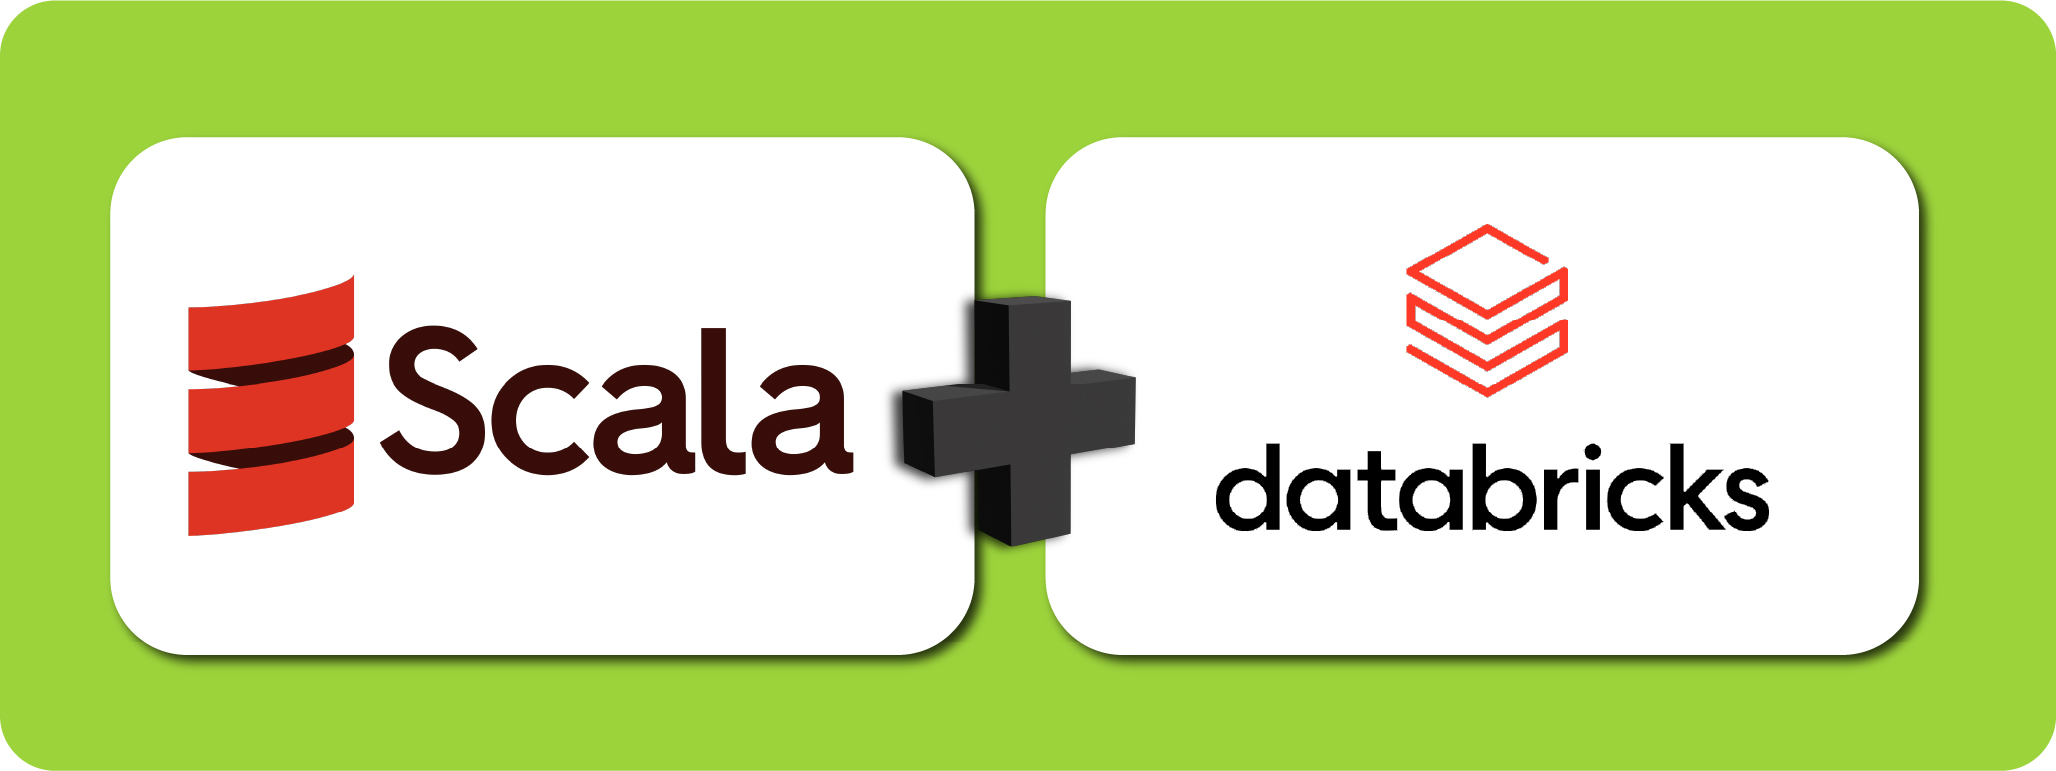 Imagem colorida, representando a união de Scala e Databricks, com o logo e nome da esquerda para direita, do Scala e em seguida o Databricks. Entre eles existe um sinal de, soma.